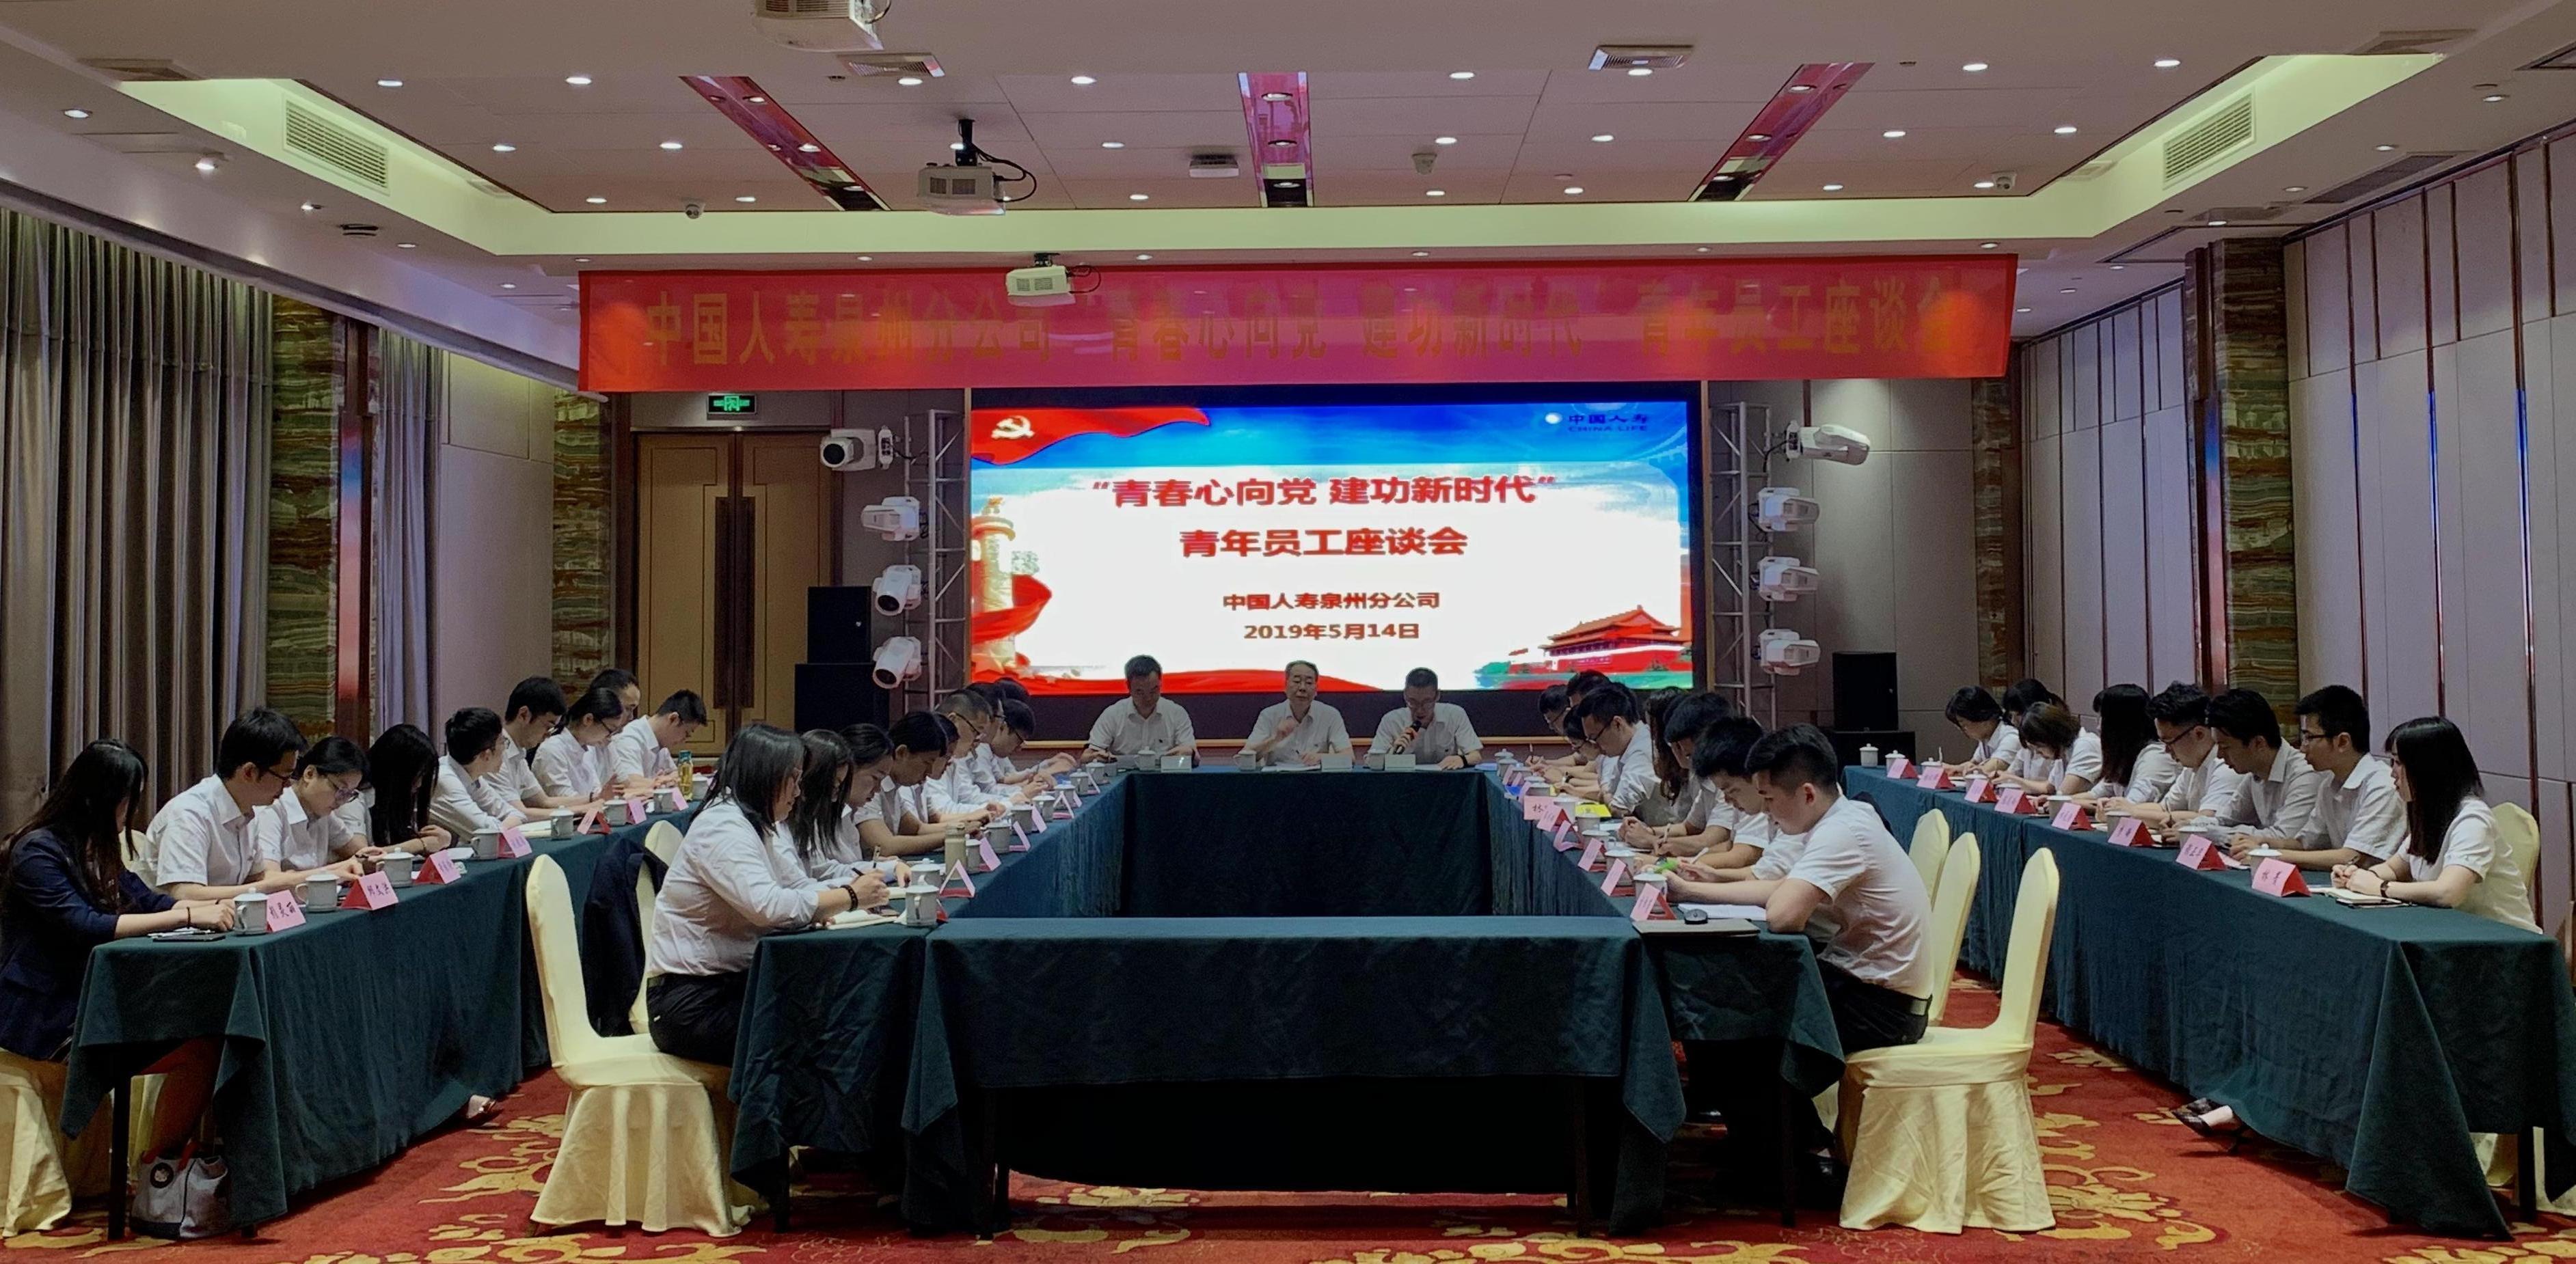 中国人寿泉州分公司举办青年员工素质提升培训班暨青年员工座谈会.JPG